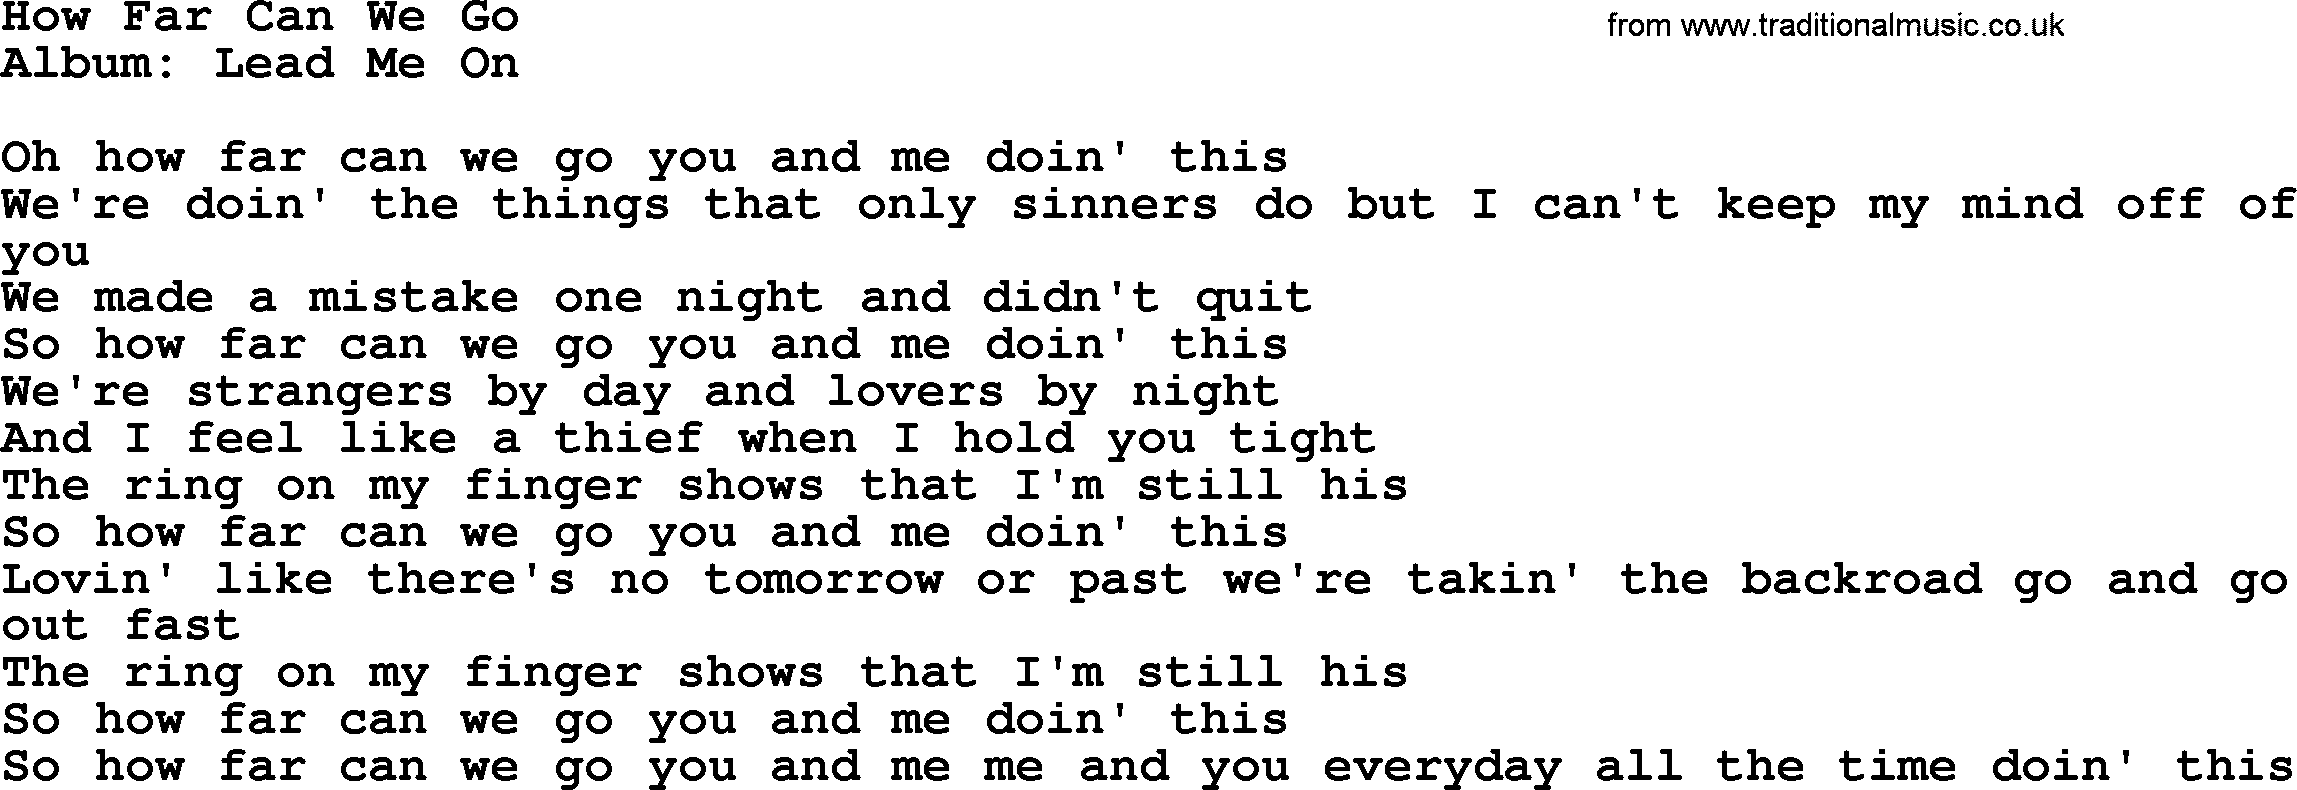 Loretta Lynn song: How Far Can We Go lyrics